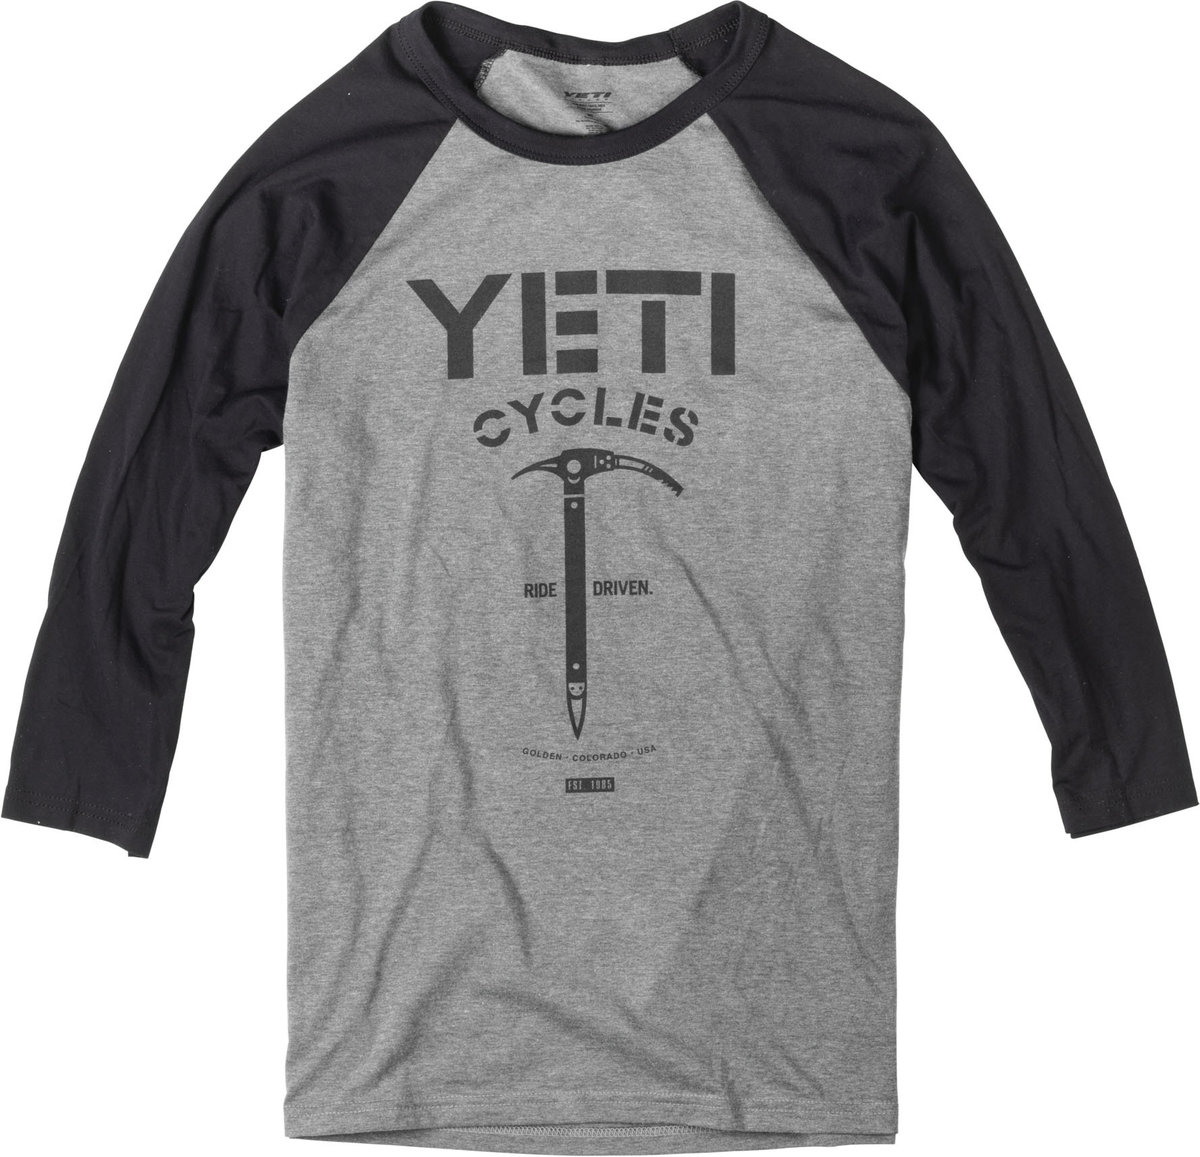 yeti bike shirt